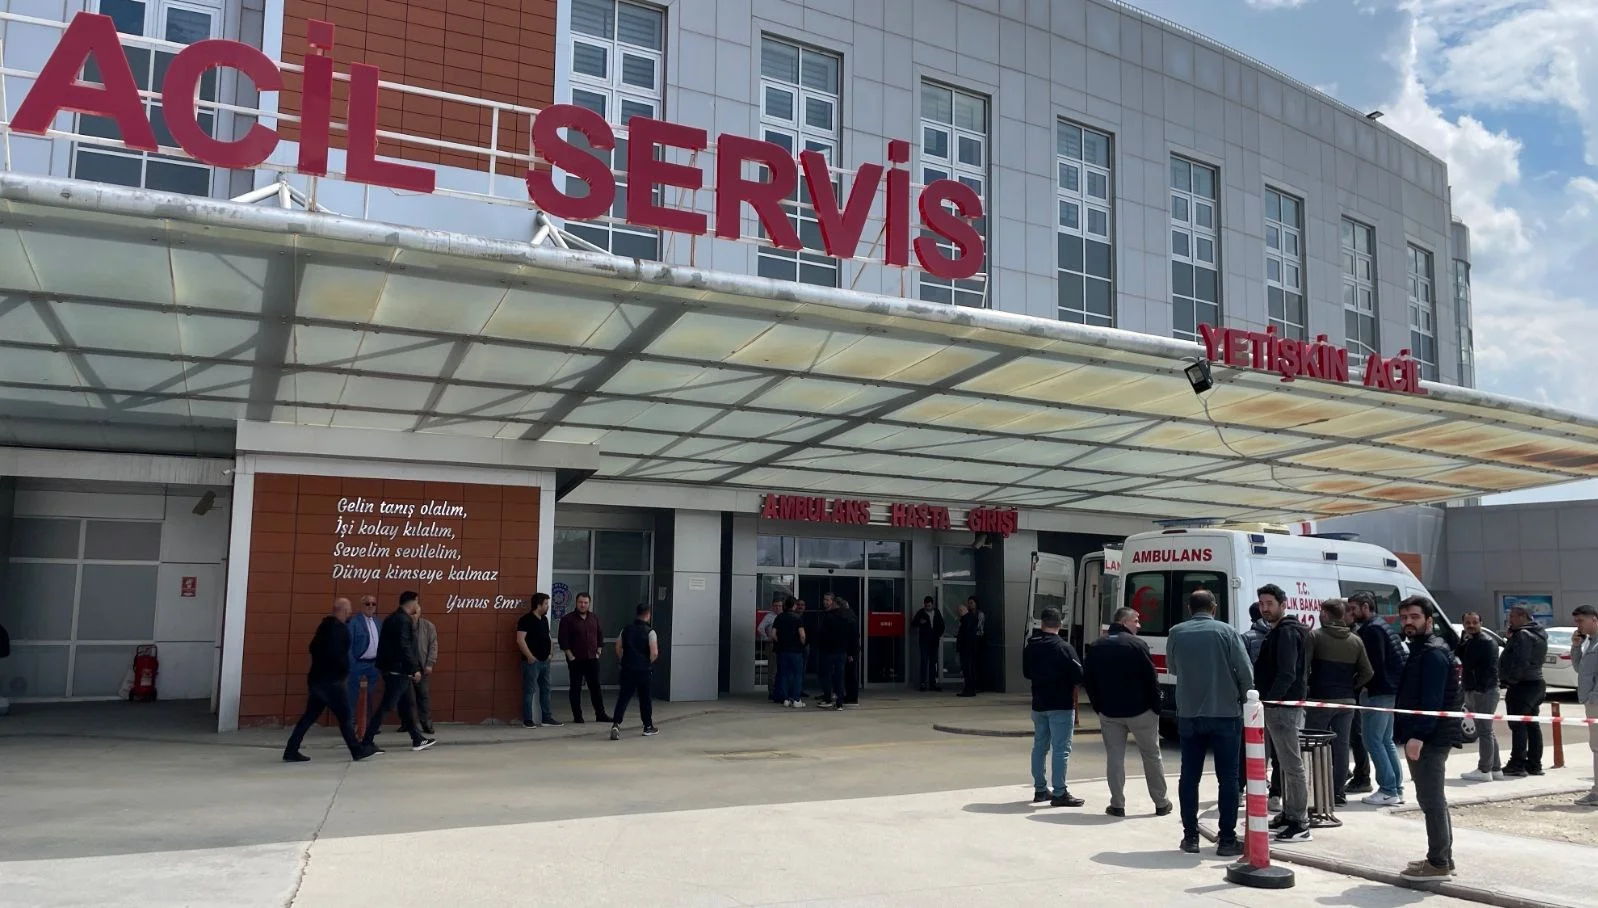 Eskişehir’de işçi servisi devrildi: 3 ölü, 31 yaralı